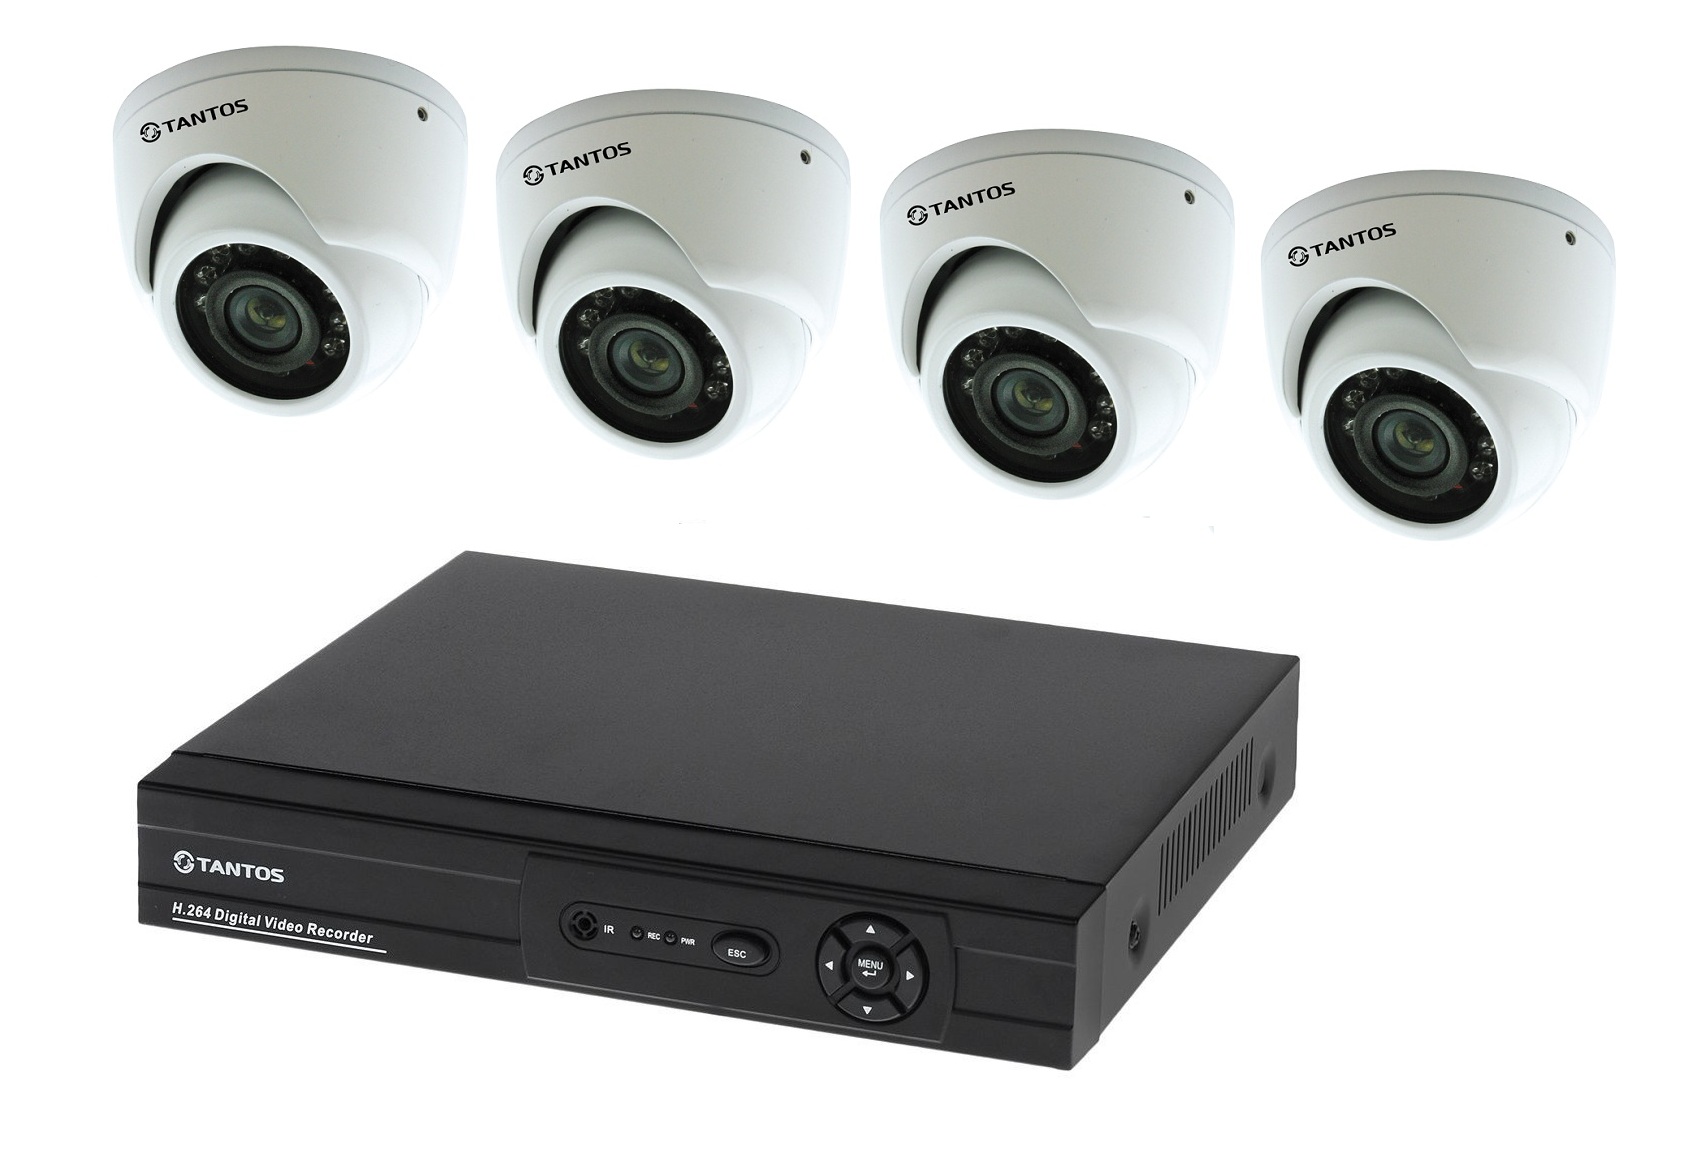 Регистраторы пао. Комплект видеонаблюдения "tantos Страж-4". Камера видеонаблюдения XPX комплект н.264. Комплект видеонаблюдения DVR 7204c1 с 4 видеокамерами. Комплект видеонаблюдения установи сам Sony 13кам.